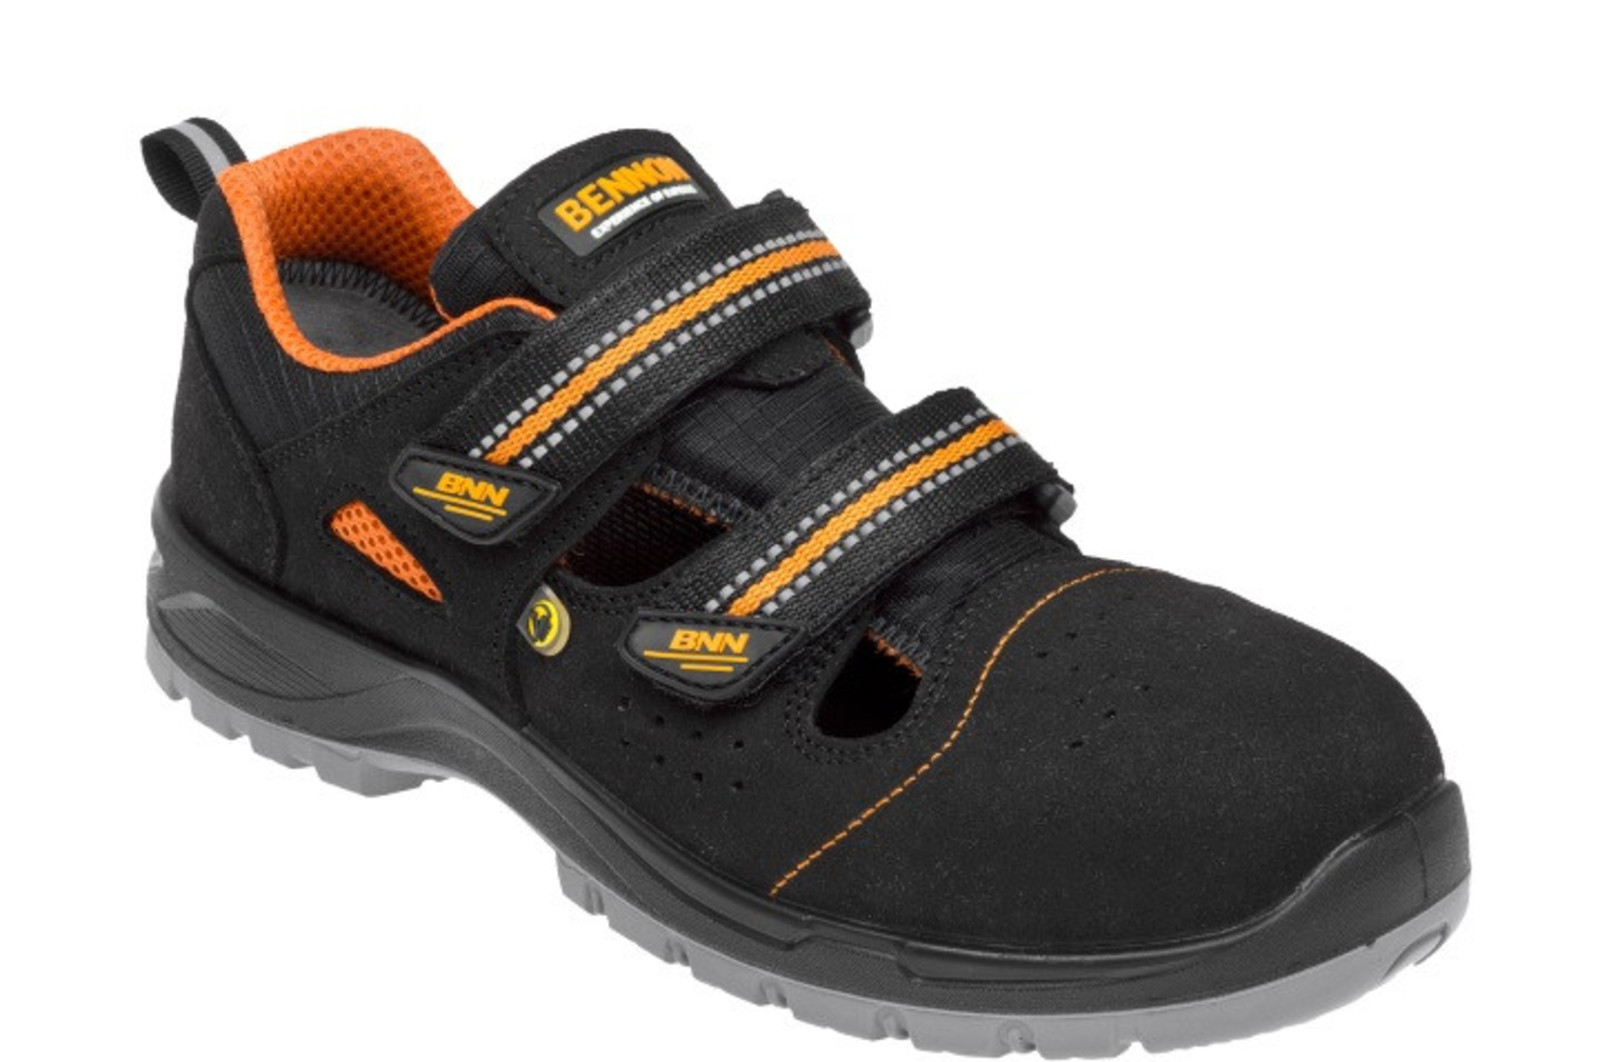 Bezpečnostné sandále Bennon Nux S1P ESD metal free - veľkosť: 36, farba: čierna